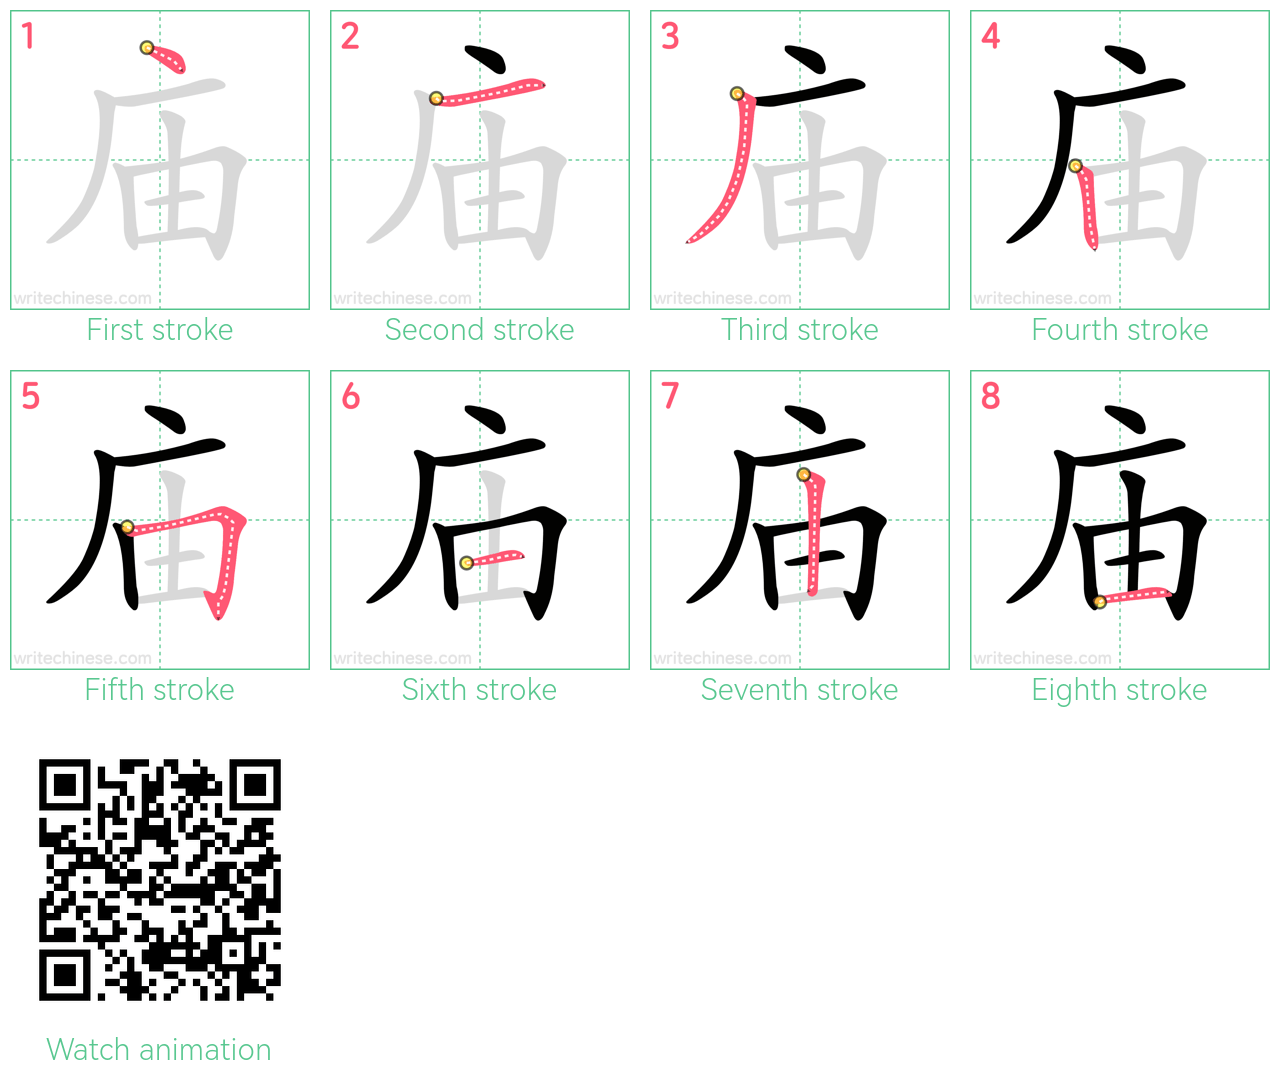 庙 step-by-step stroke order diagrams